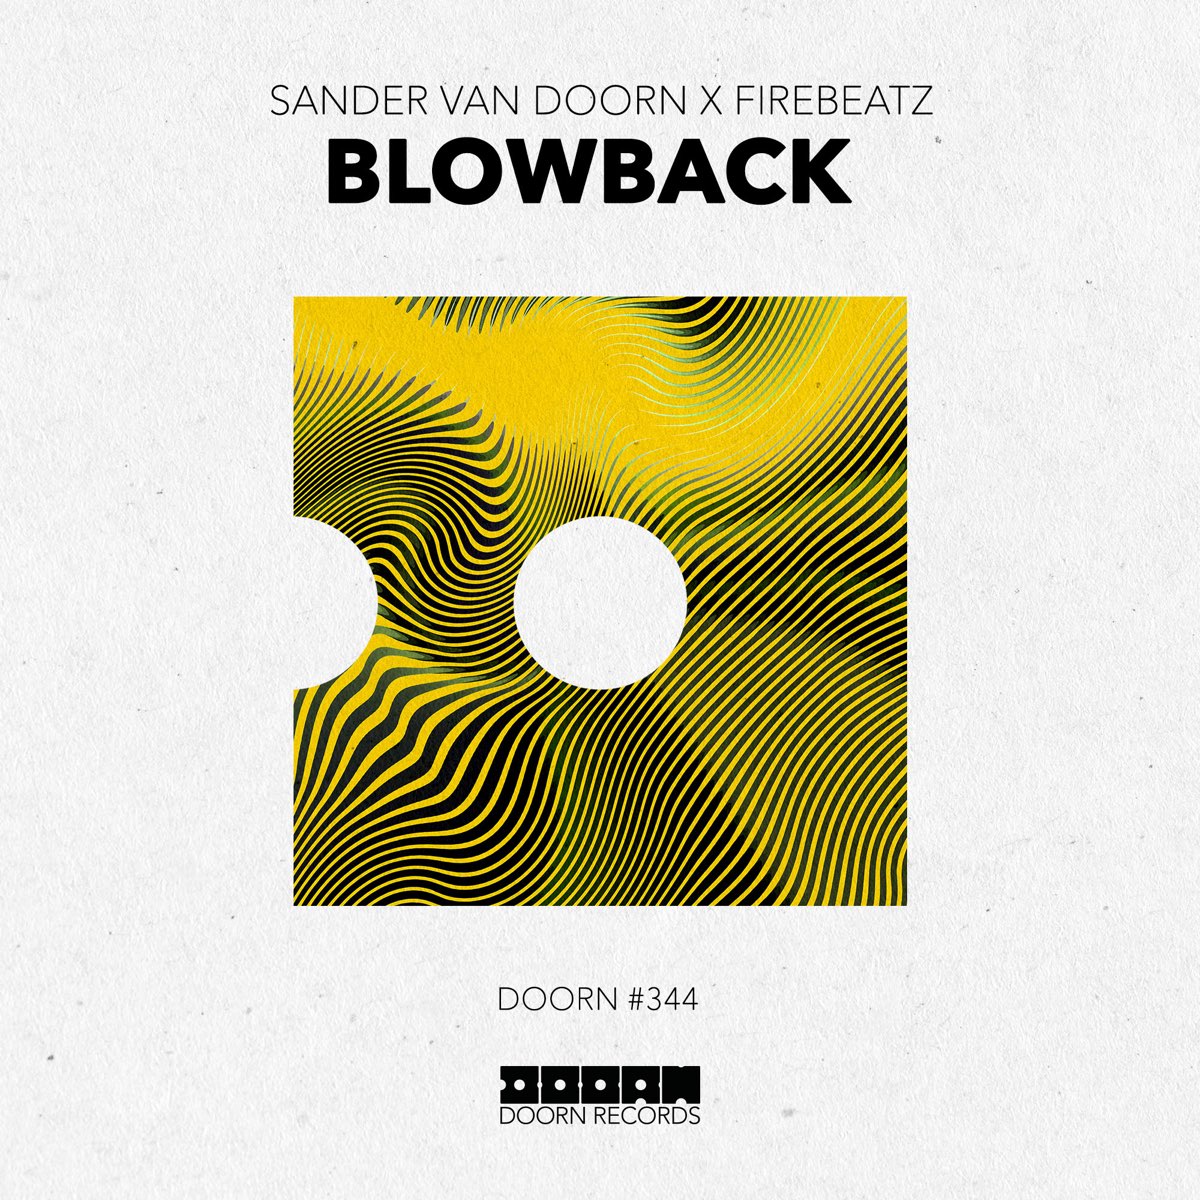 Blowback - Single by Sander van Doorn & Firebeatz on iTunes